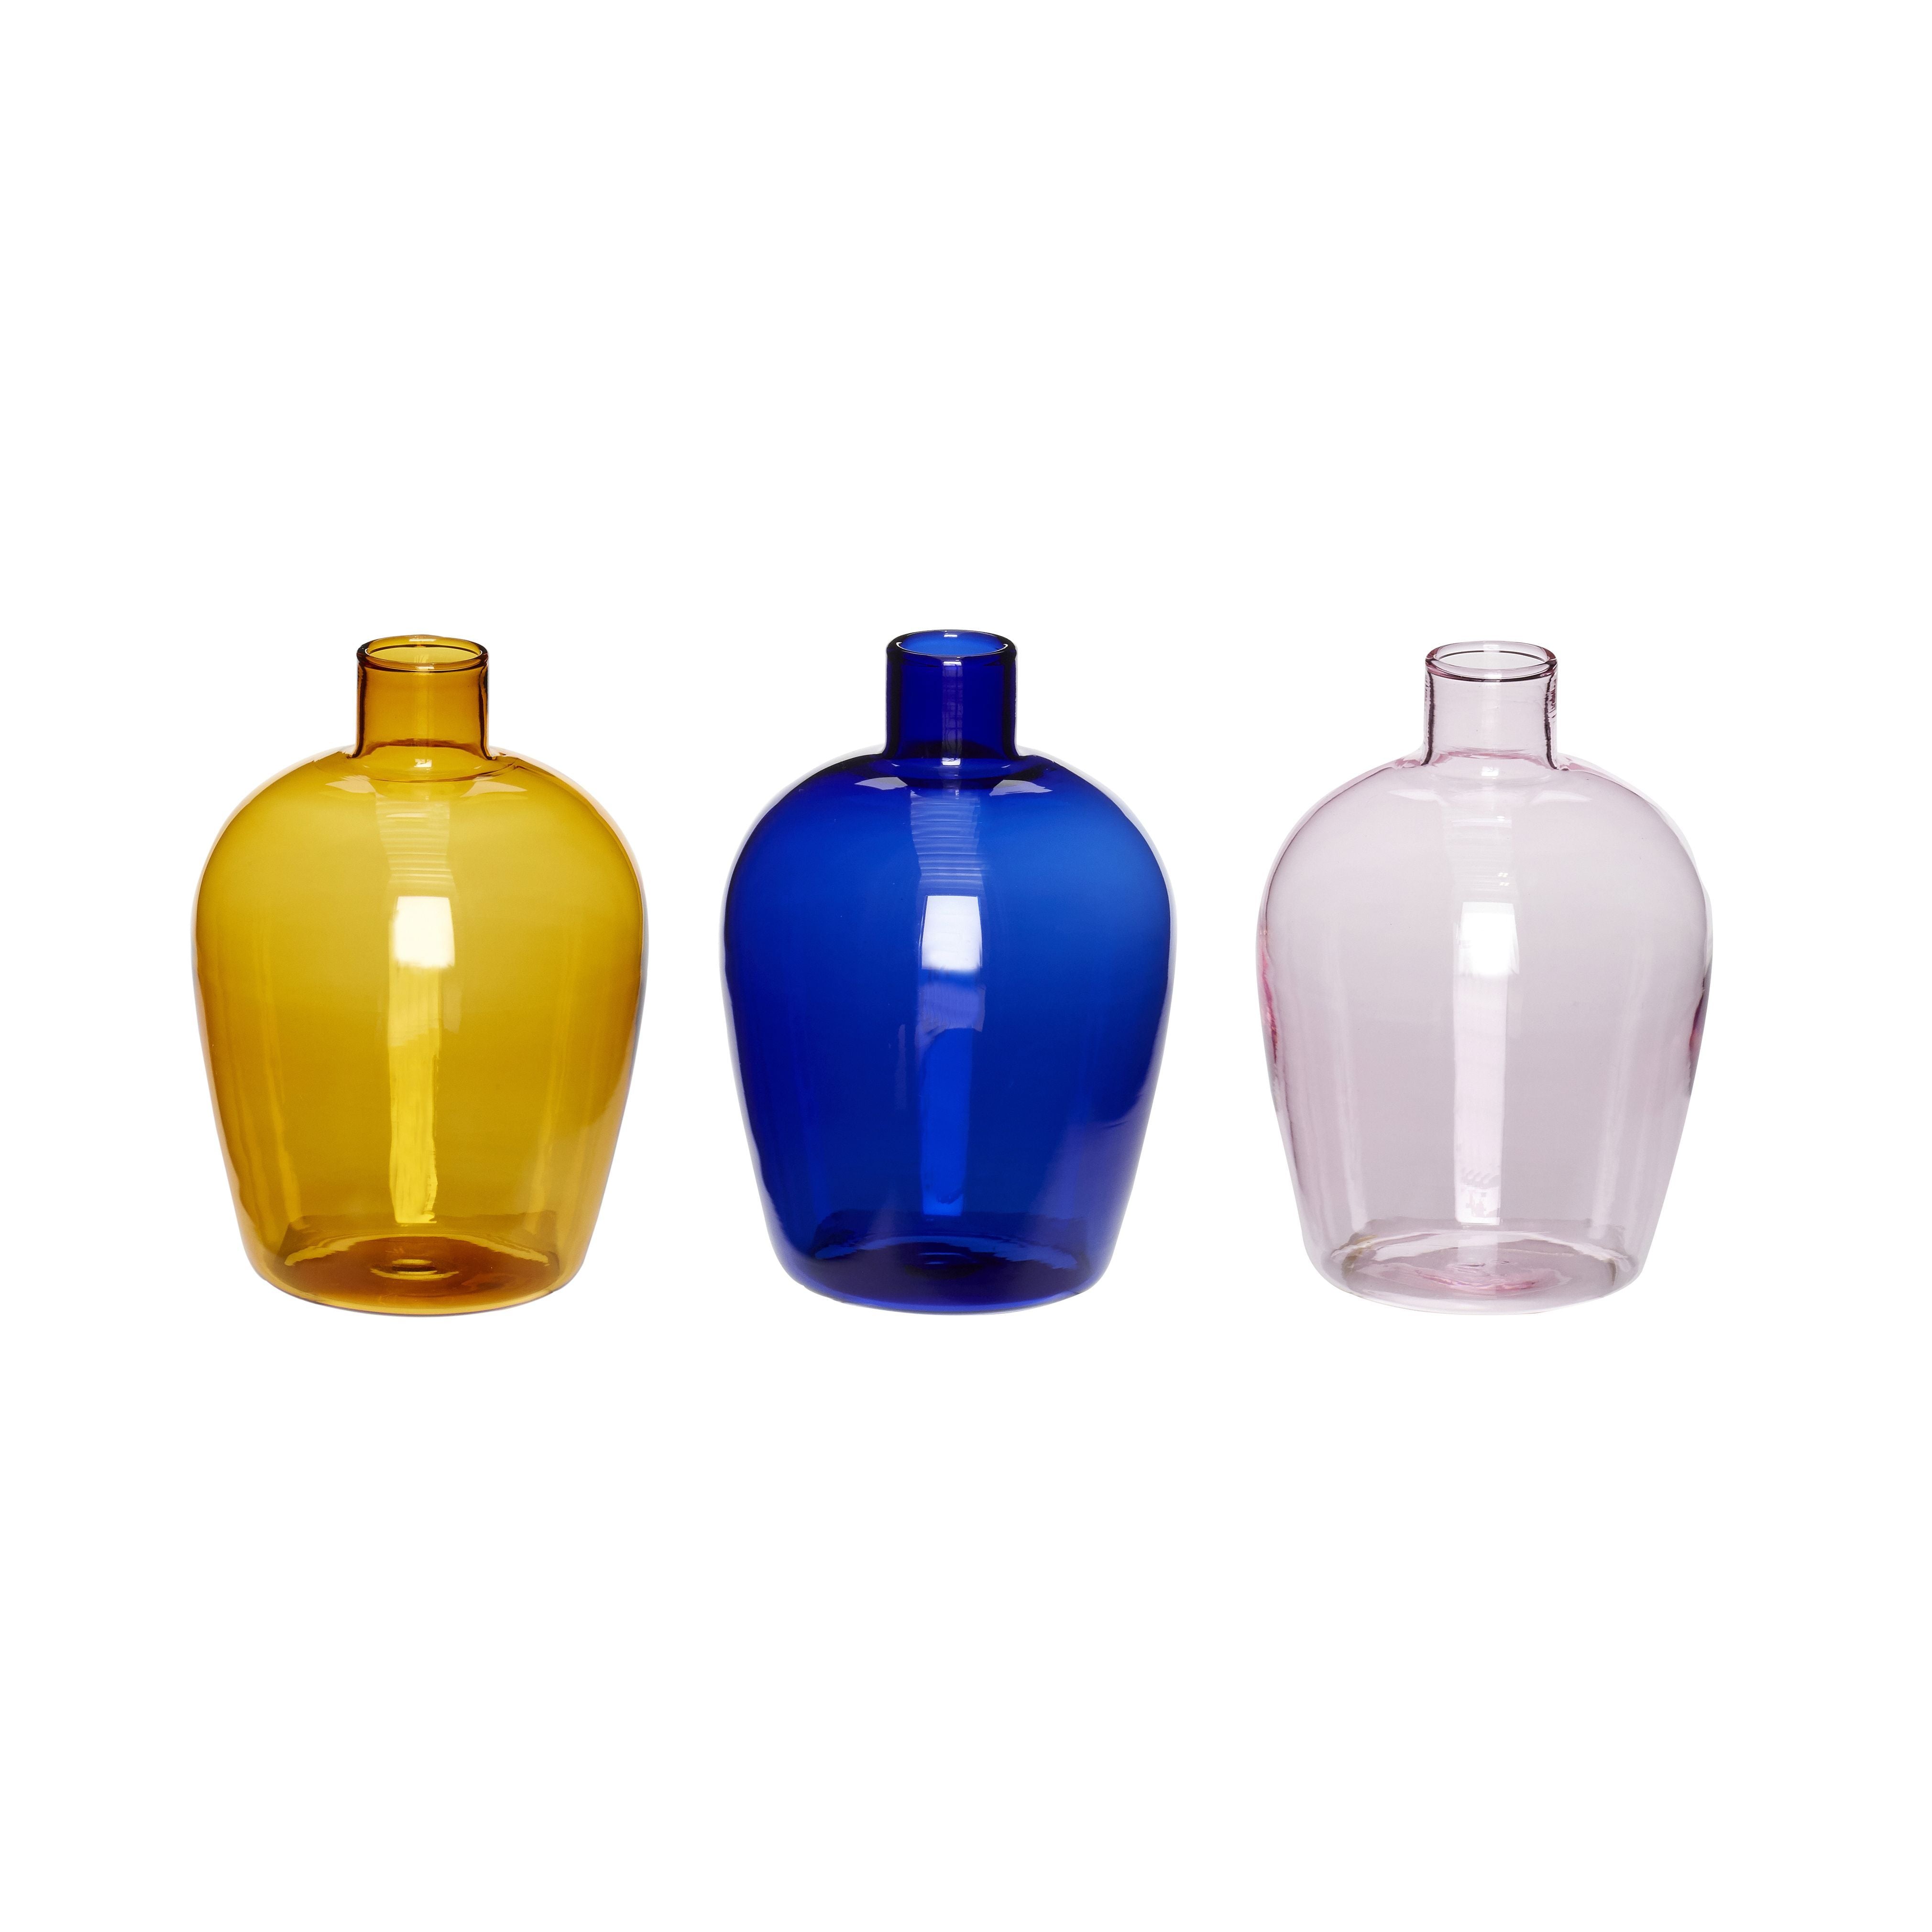 Hübsch Speel vaasglas amber/blauw/roze s/3, Øx H 7x10 cm